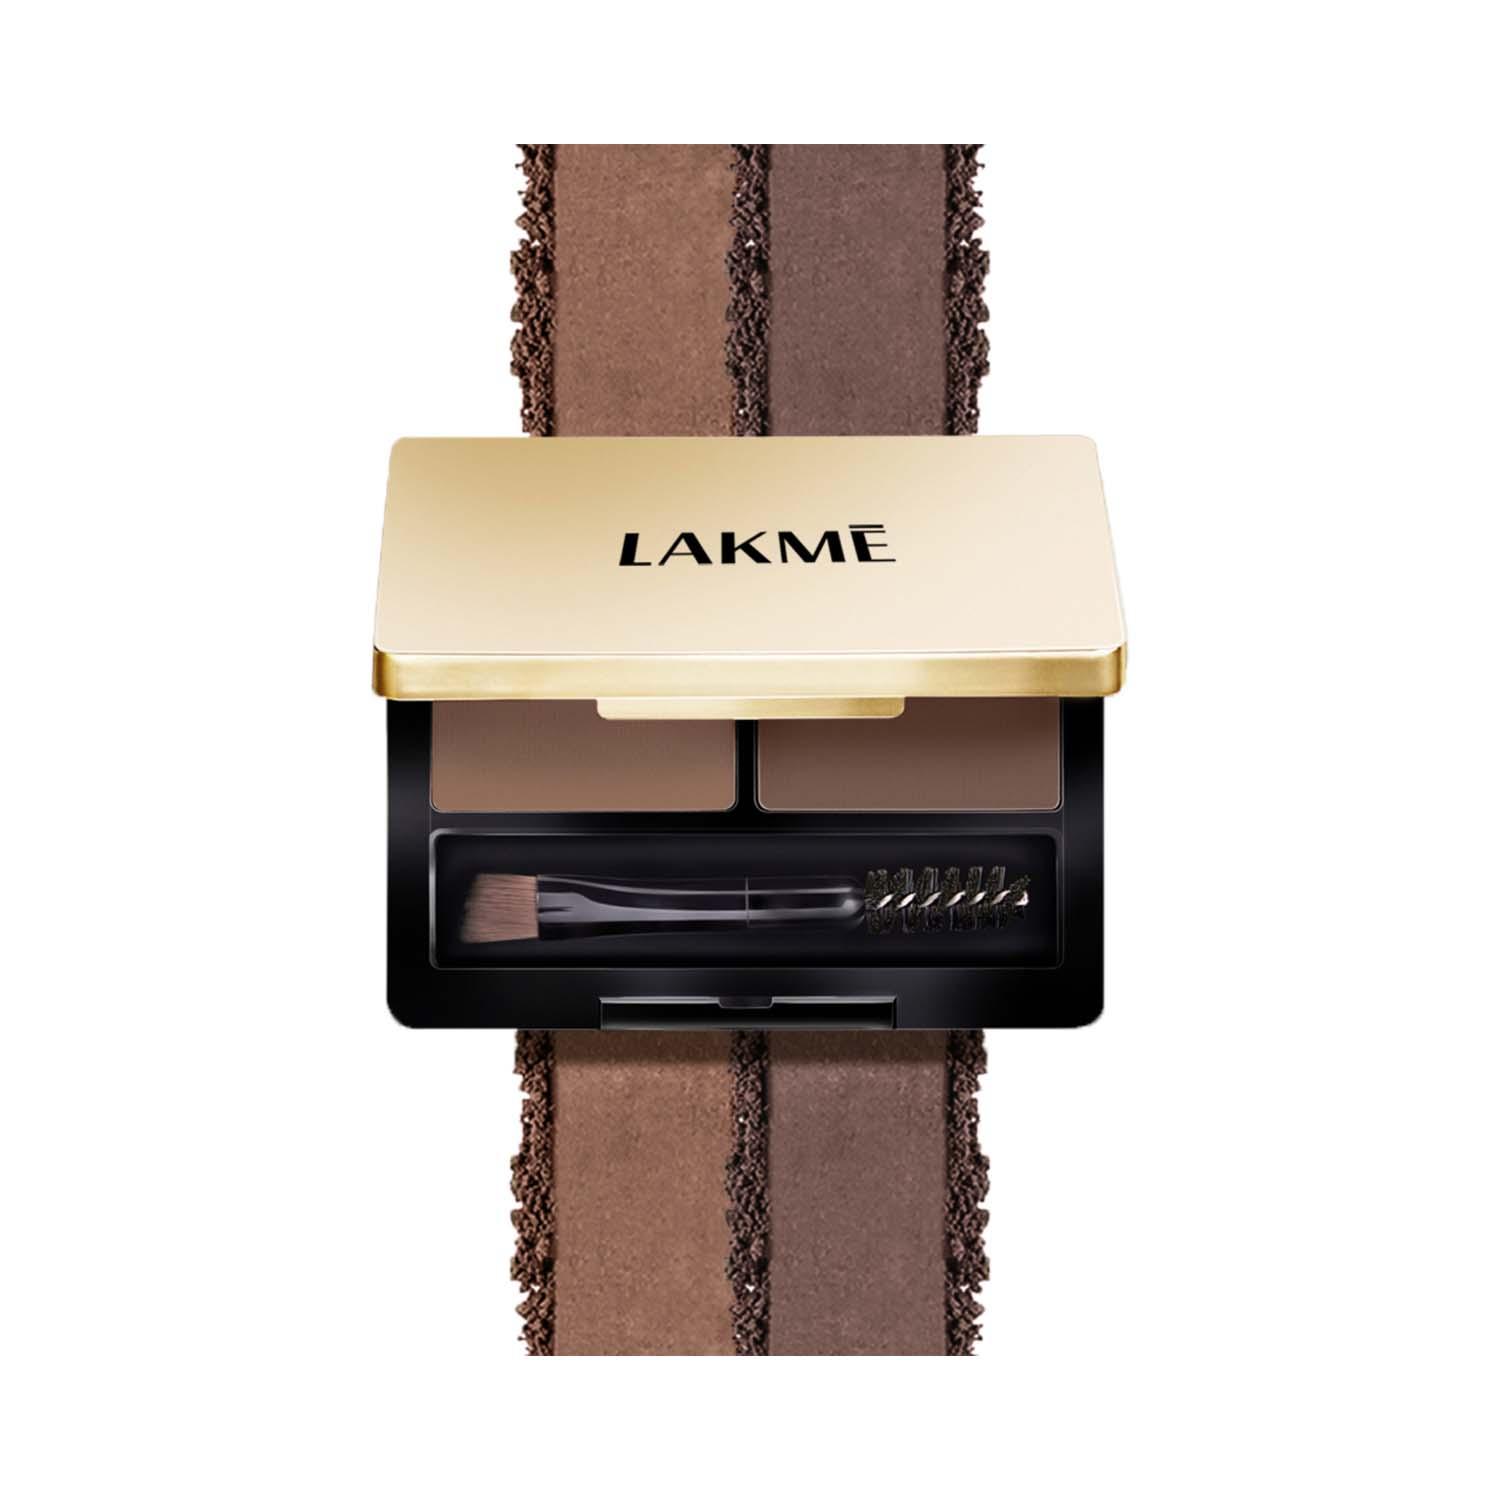 Lakme Facelift Brow Sculpt Palette - Brown (4.5g)